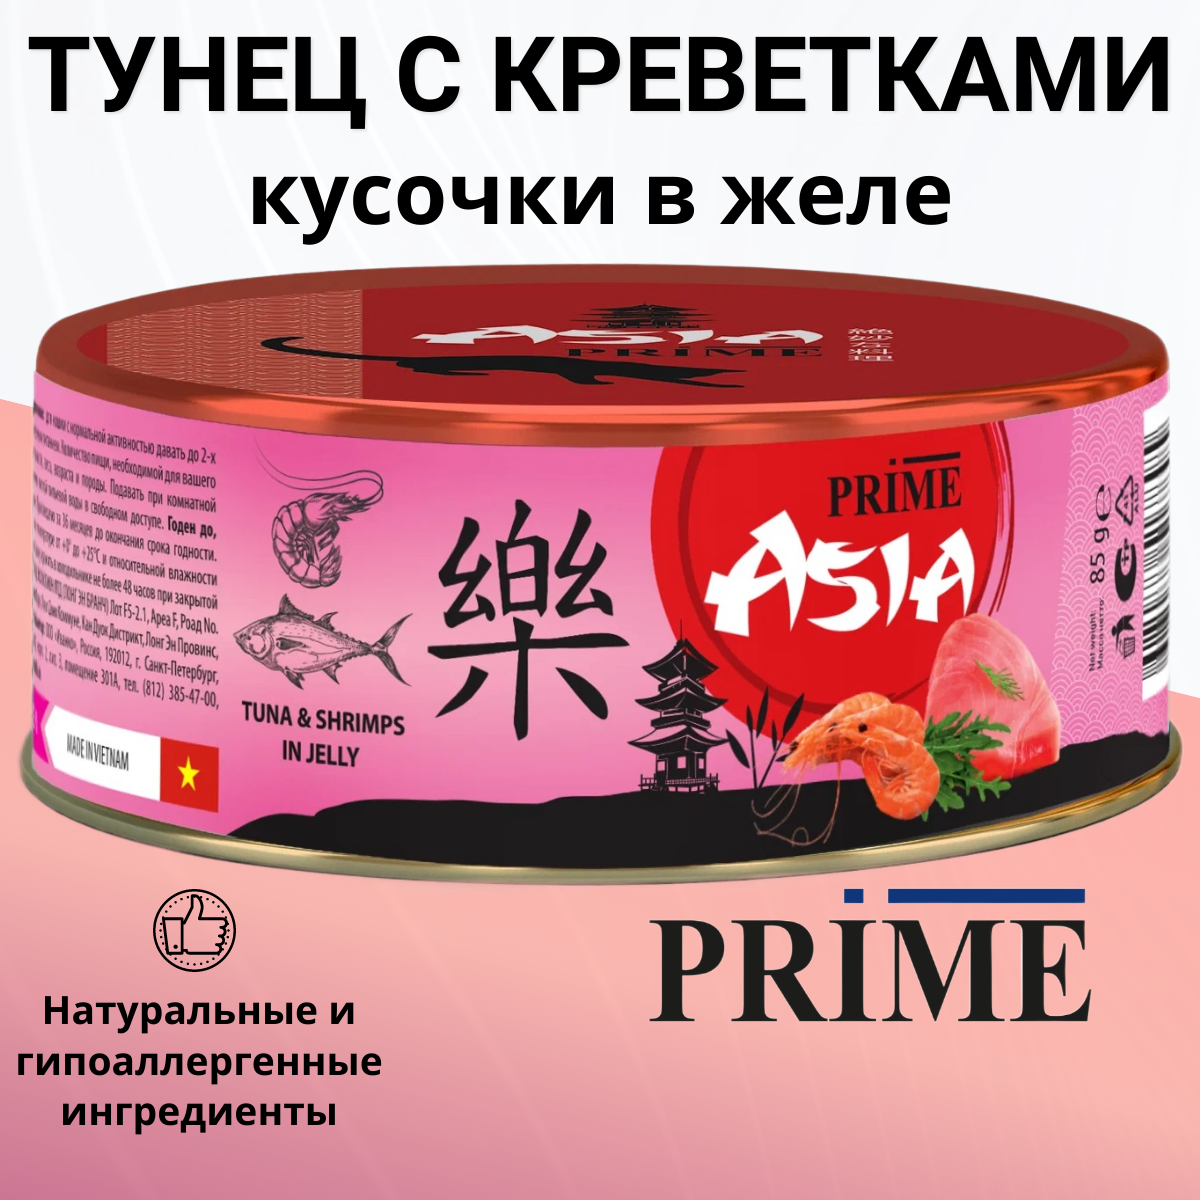 Влажный корм PRIME ASIA для любых кошек тунец с креветками в желе, 85 гр.